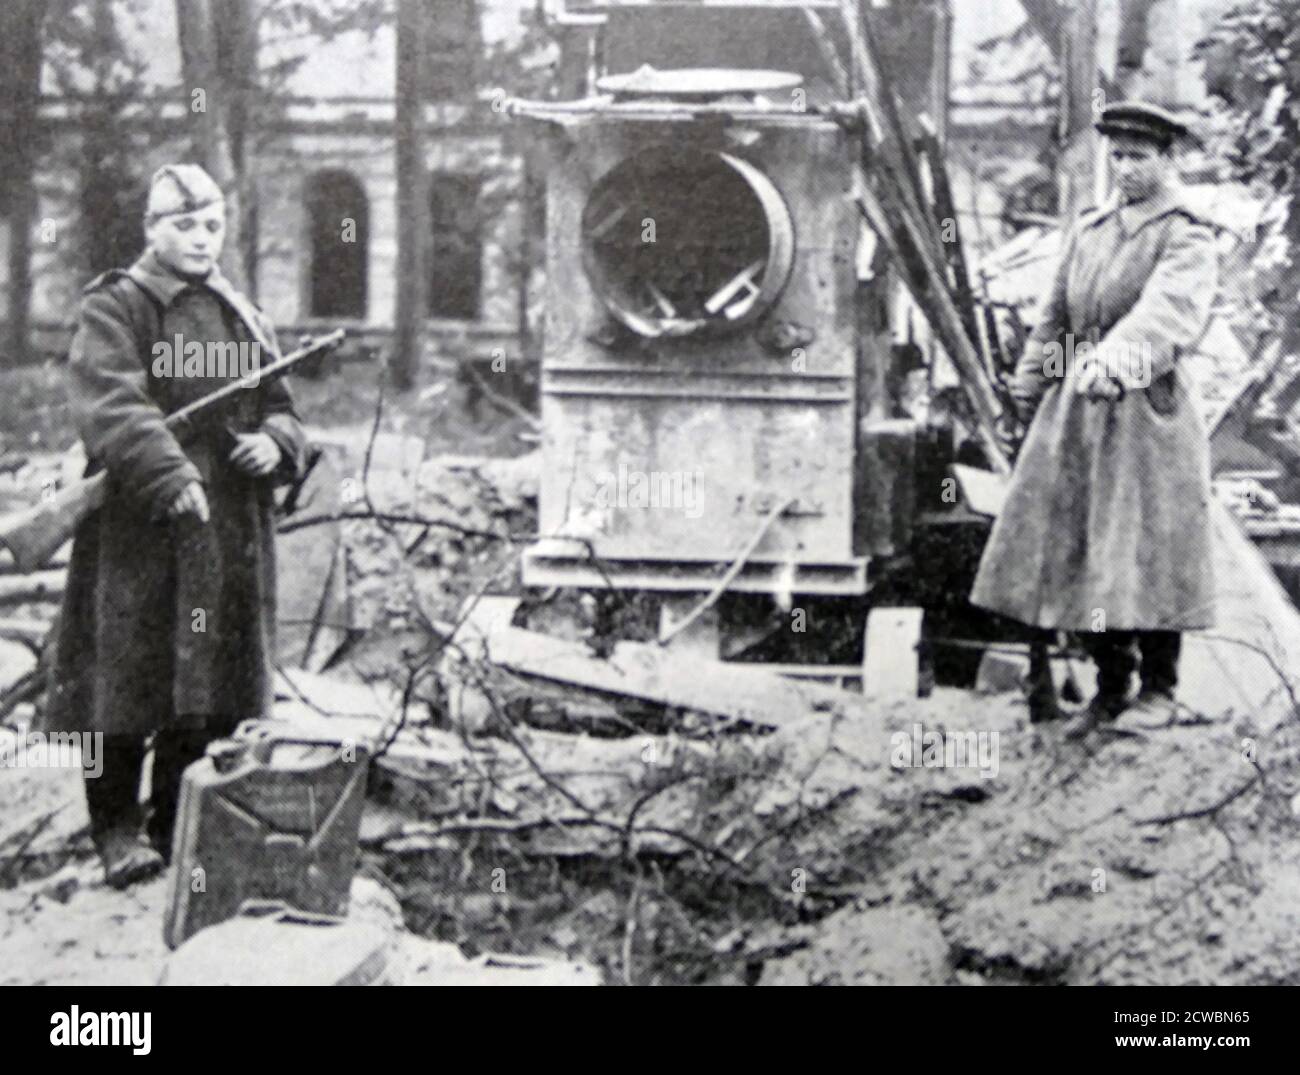 Schwarz-Weiß-Fotografie des Zweiten Weltkriegs (1939-1945) zeigt sowjetische Soldaten, die auf einen Trümmerhaufen im Berliner Kanzlerhof zeigen, wo die Überreste von Adolf Hitler (1889-1945) und seiner Frau Eva Braun (1912-1945) nach ihrem Selbstmord durch Bombenangriffe begraben werden. Stockfoto